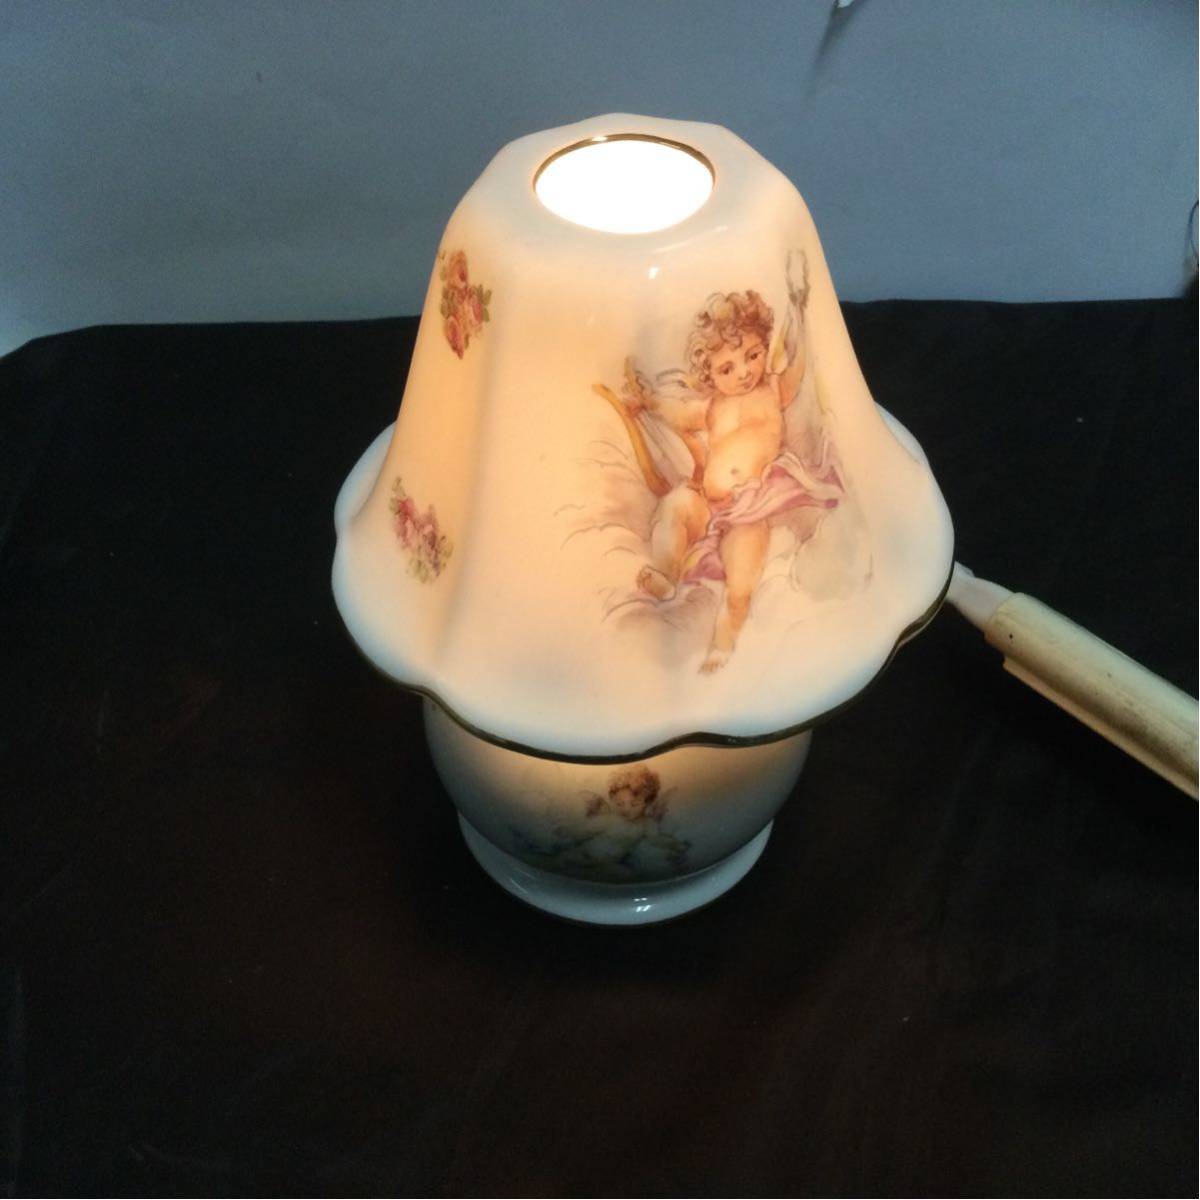  прекрасный товар Reichenbach керамика электрический подставка laihi.mba - Германия ангел свет стол лампа настольный лампа настольная лампа 